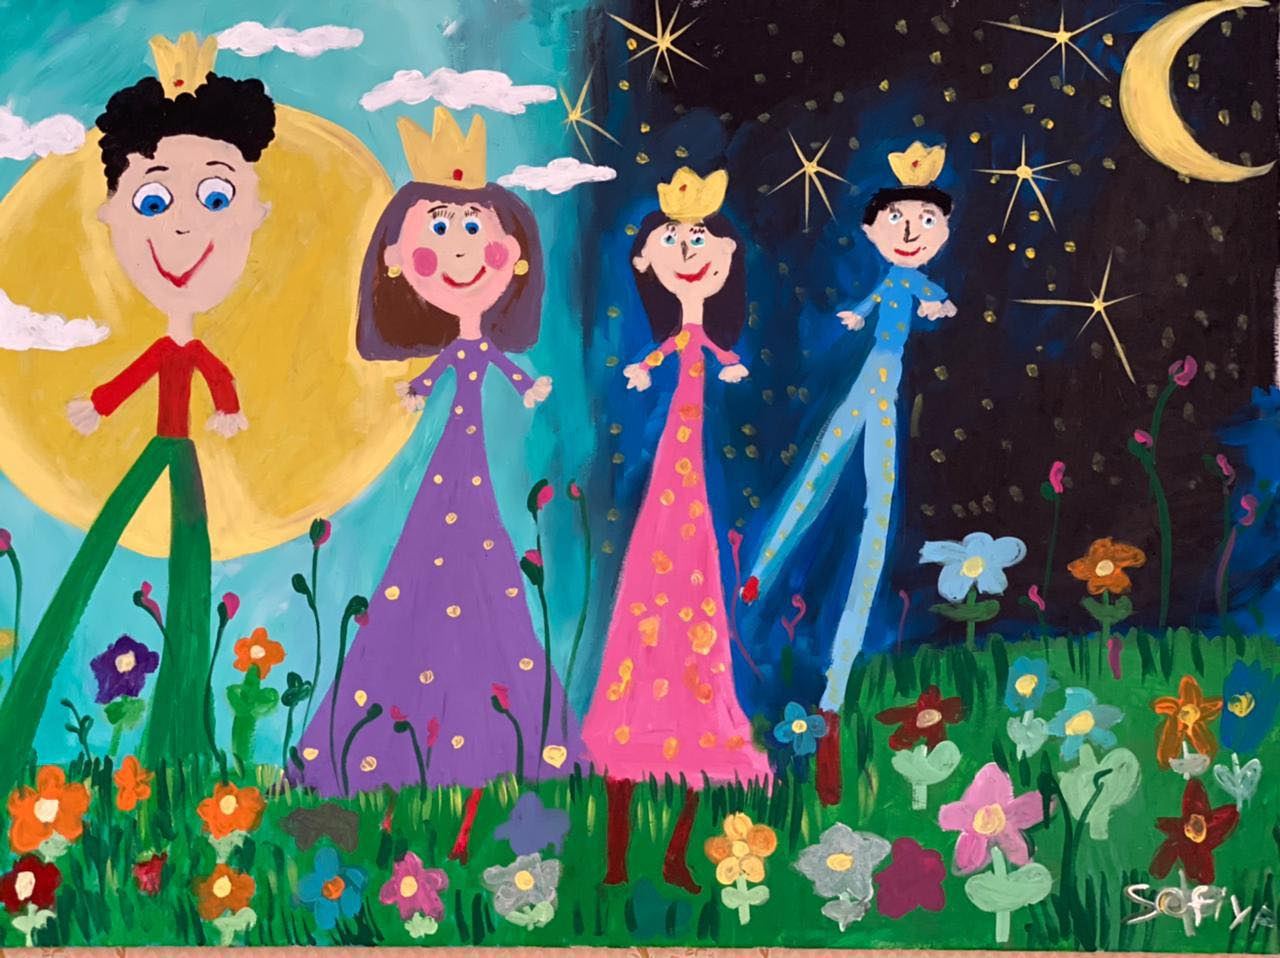 В Париже прошел арт-праздник - представлены работы азербайджанских детей (ФОТО)